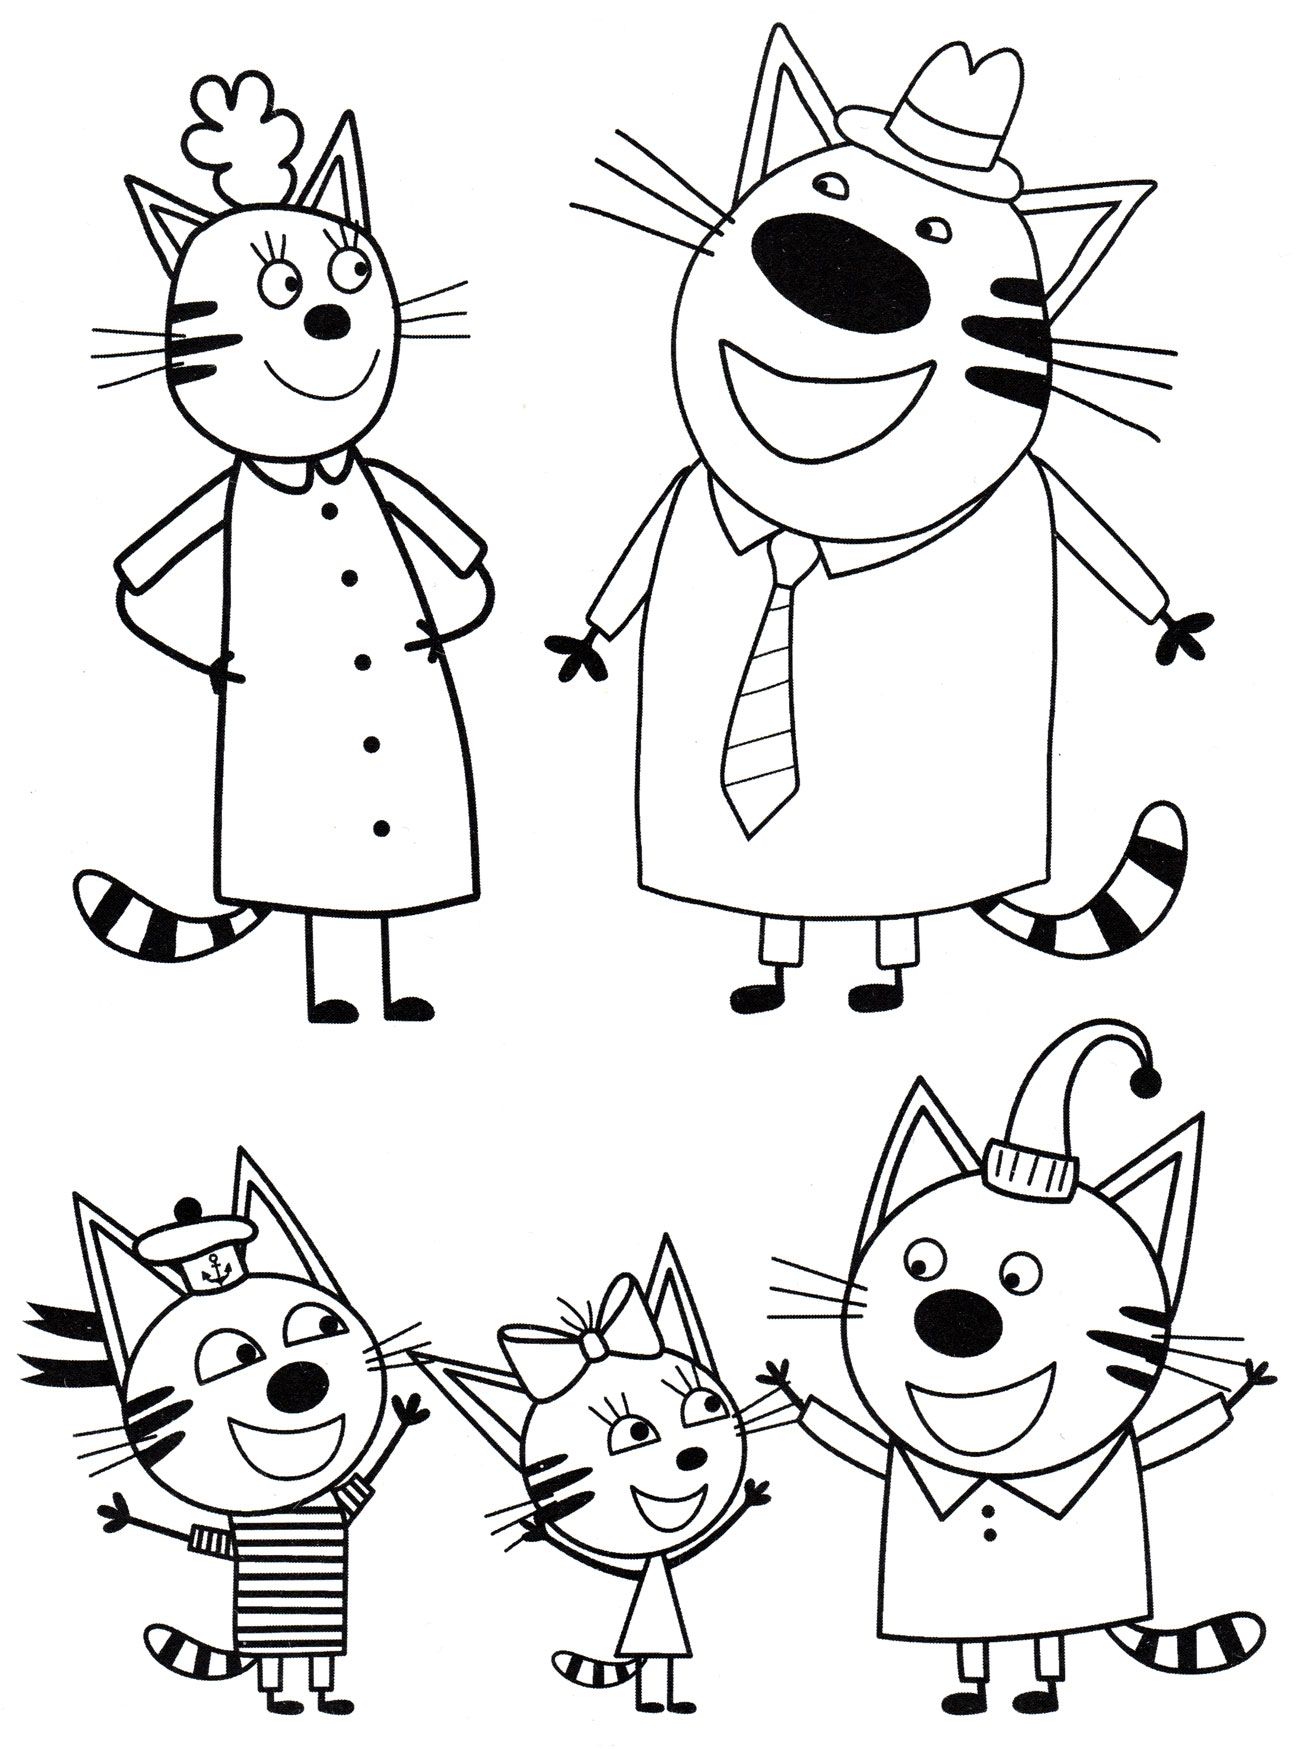 Как нарисовать 3 кота из мультика